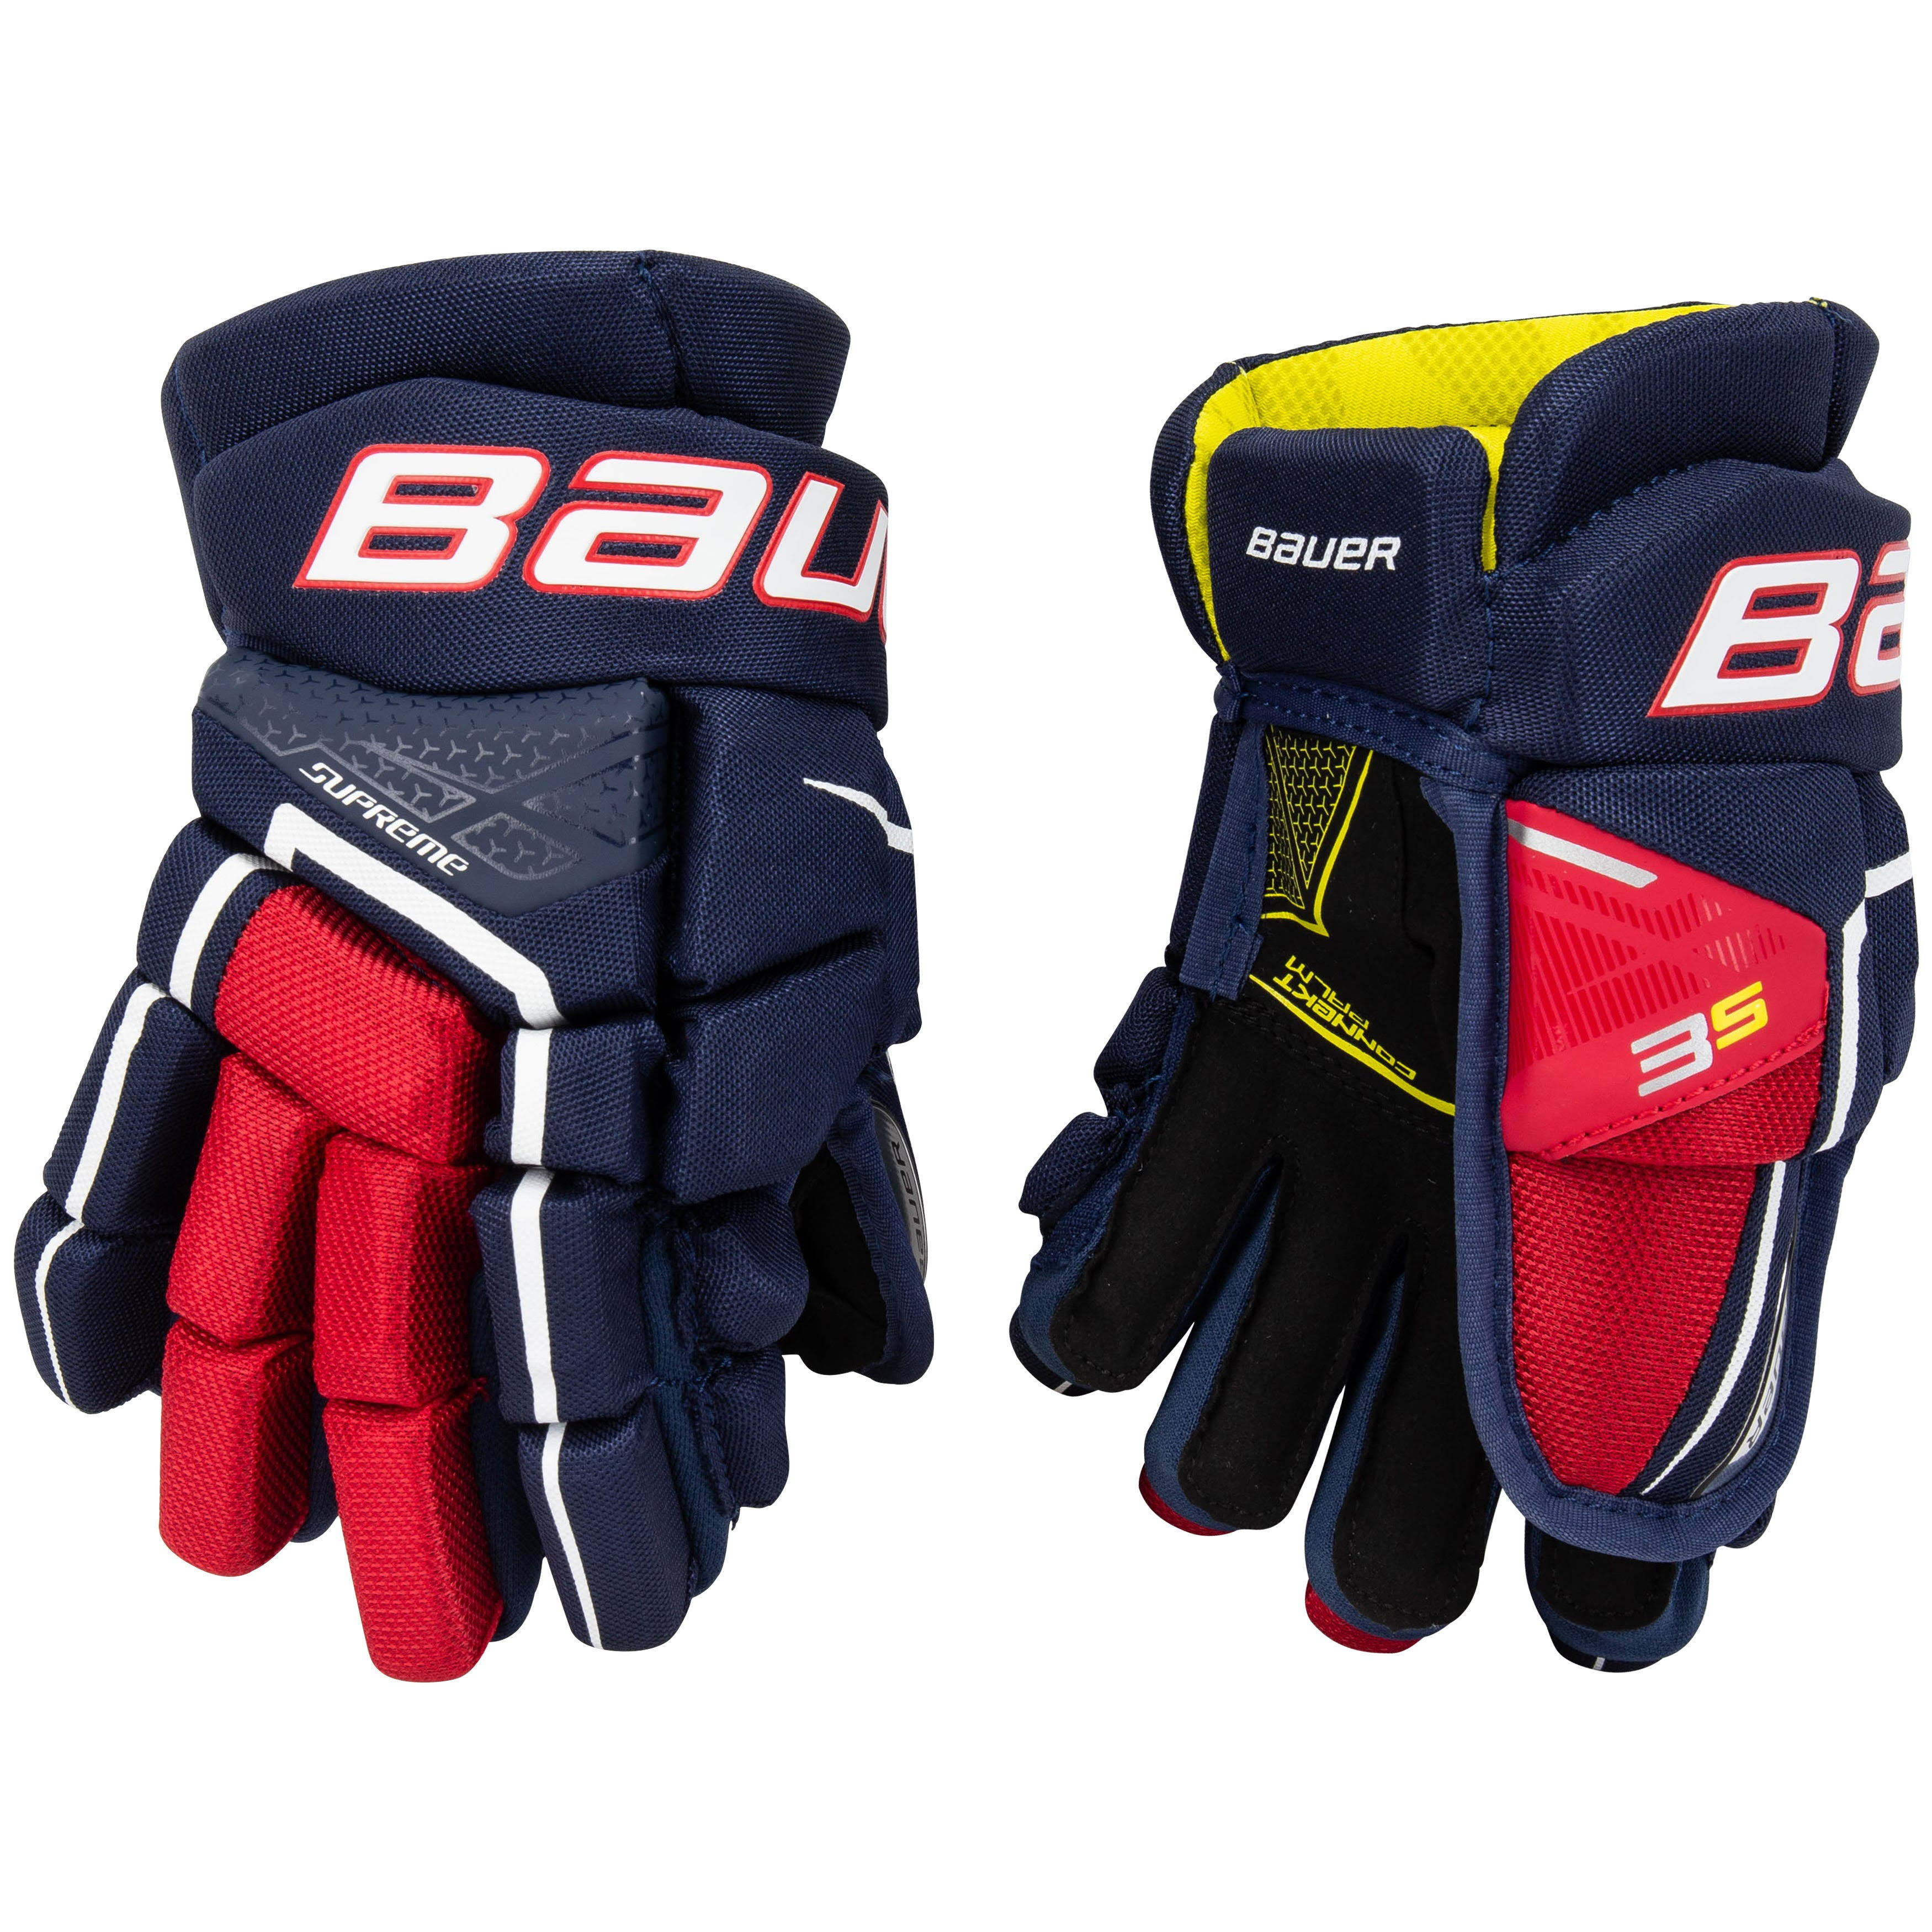 Bauer Supreme 3S Hockey Gloves - Junior - Navy/Red/White - 10.0"